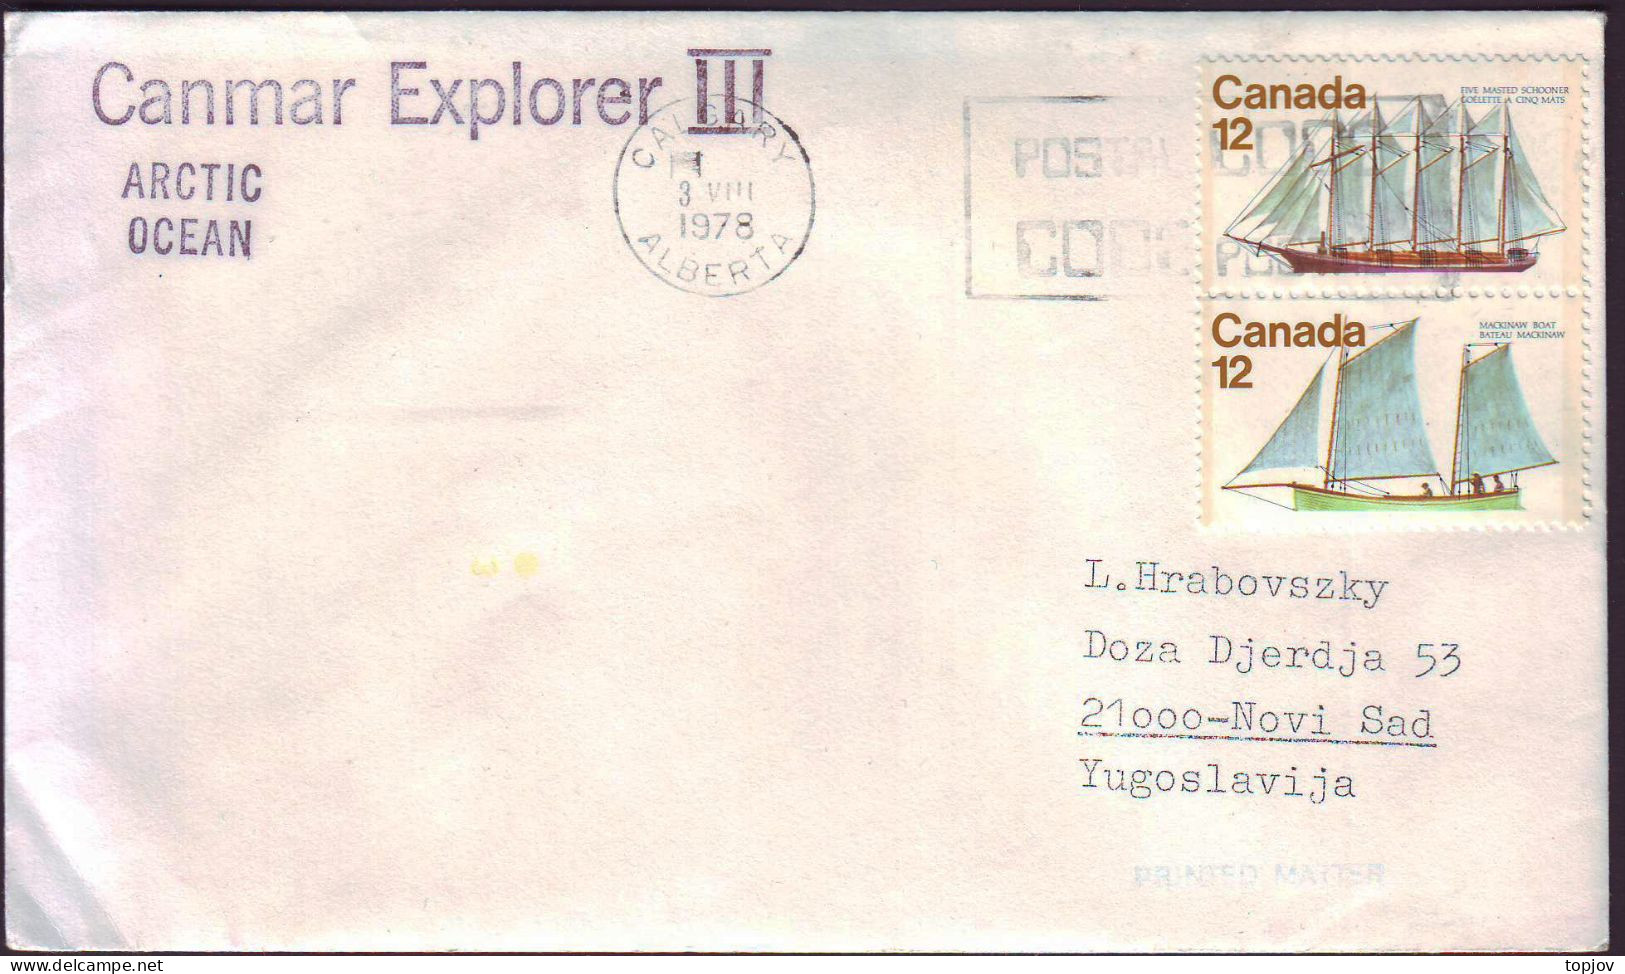 CANADA - CANMAR  EXPLORER  III  IN ARCTIC OCEAN - 1978 - Arktis Expeditionen